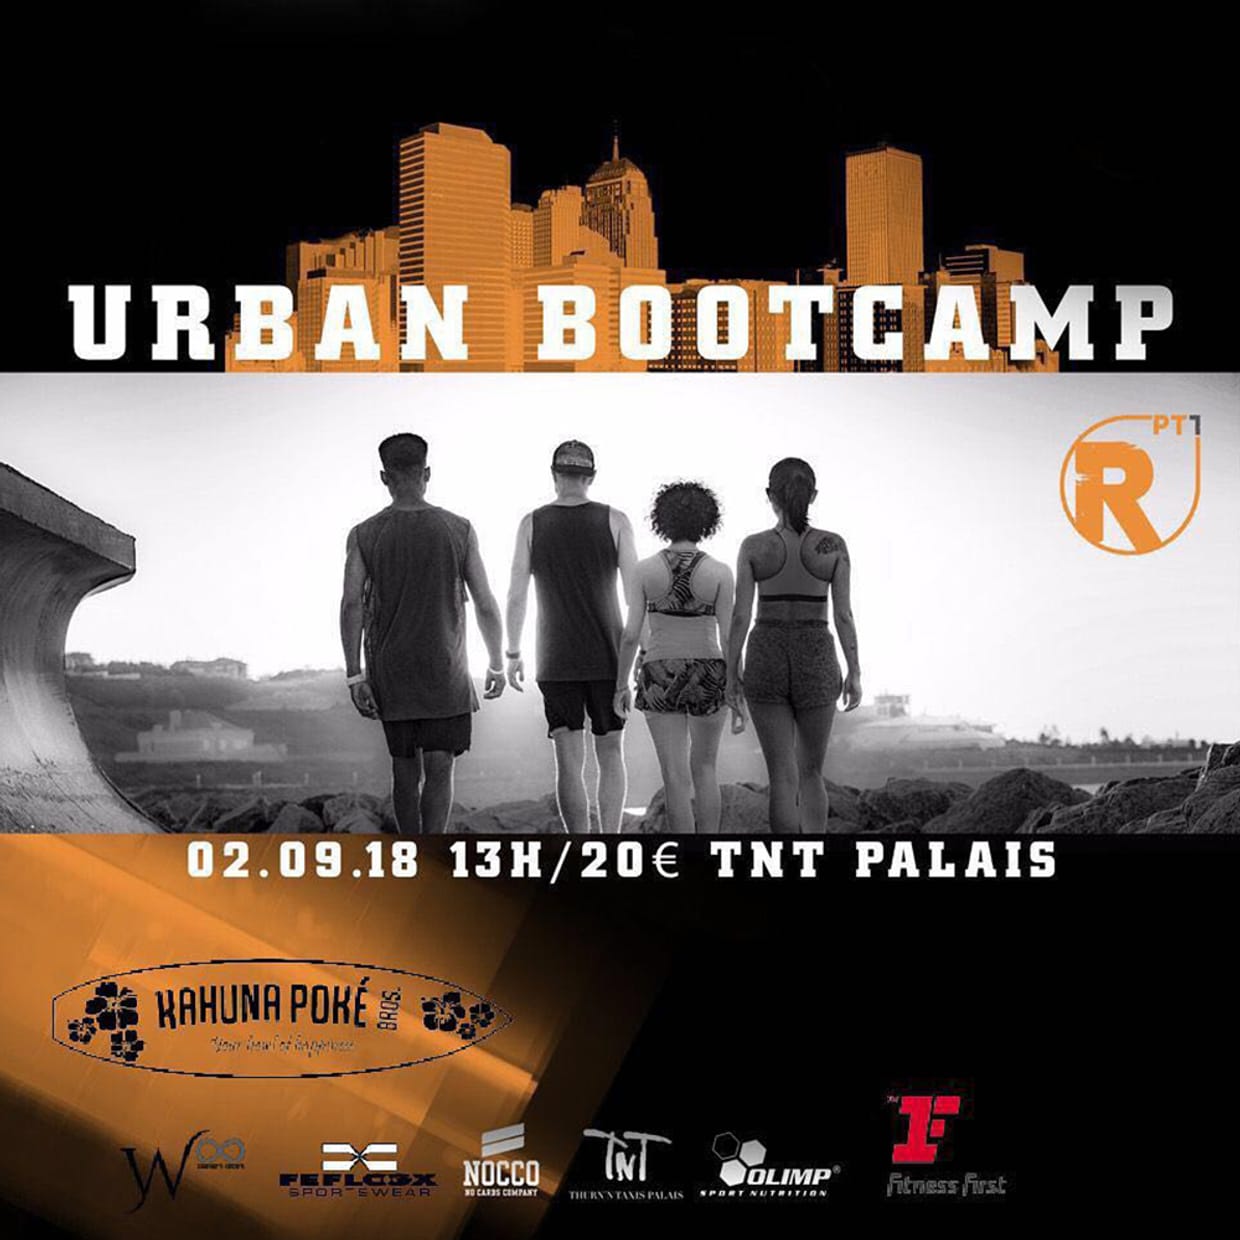 Urban Bootcamp by Rpt1.